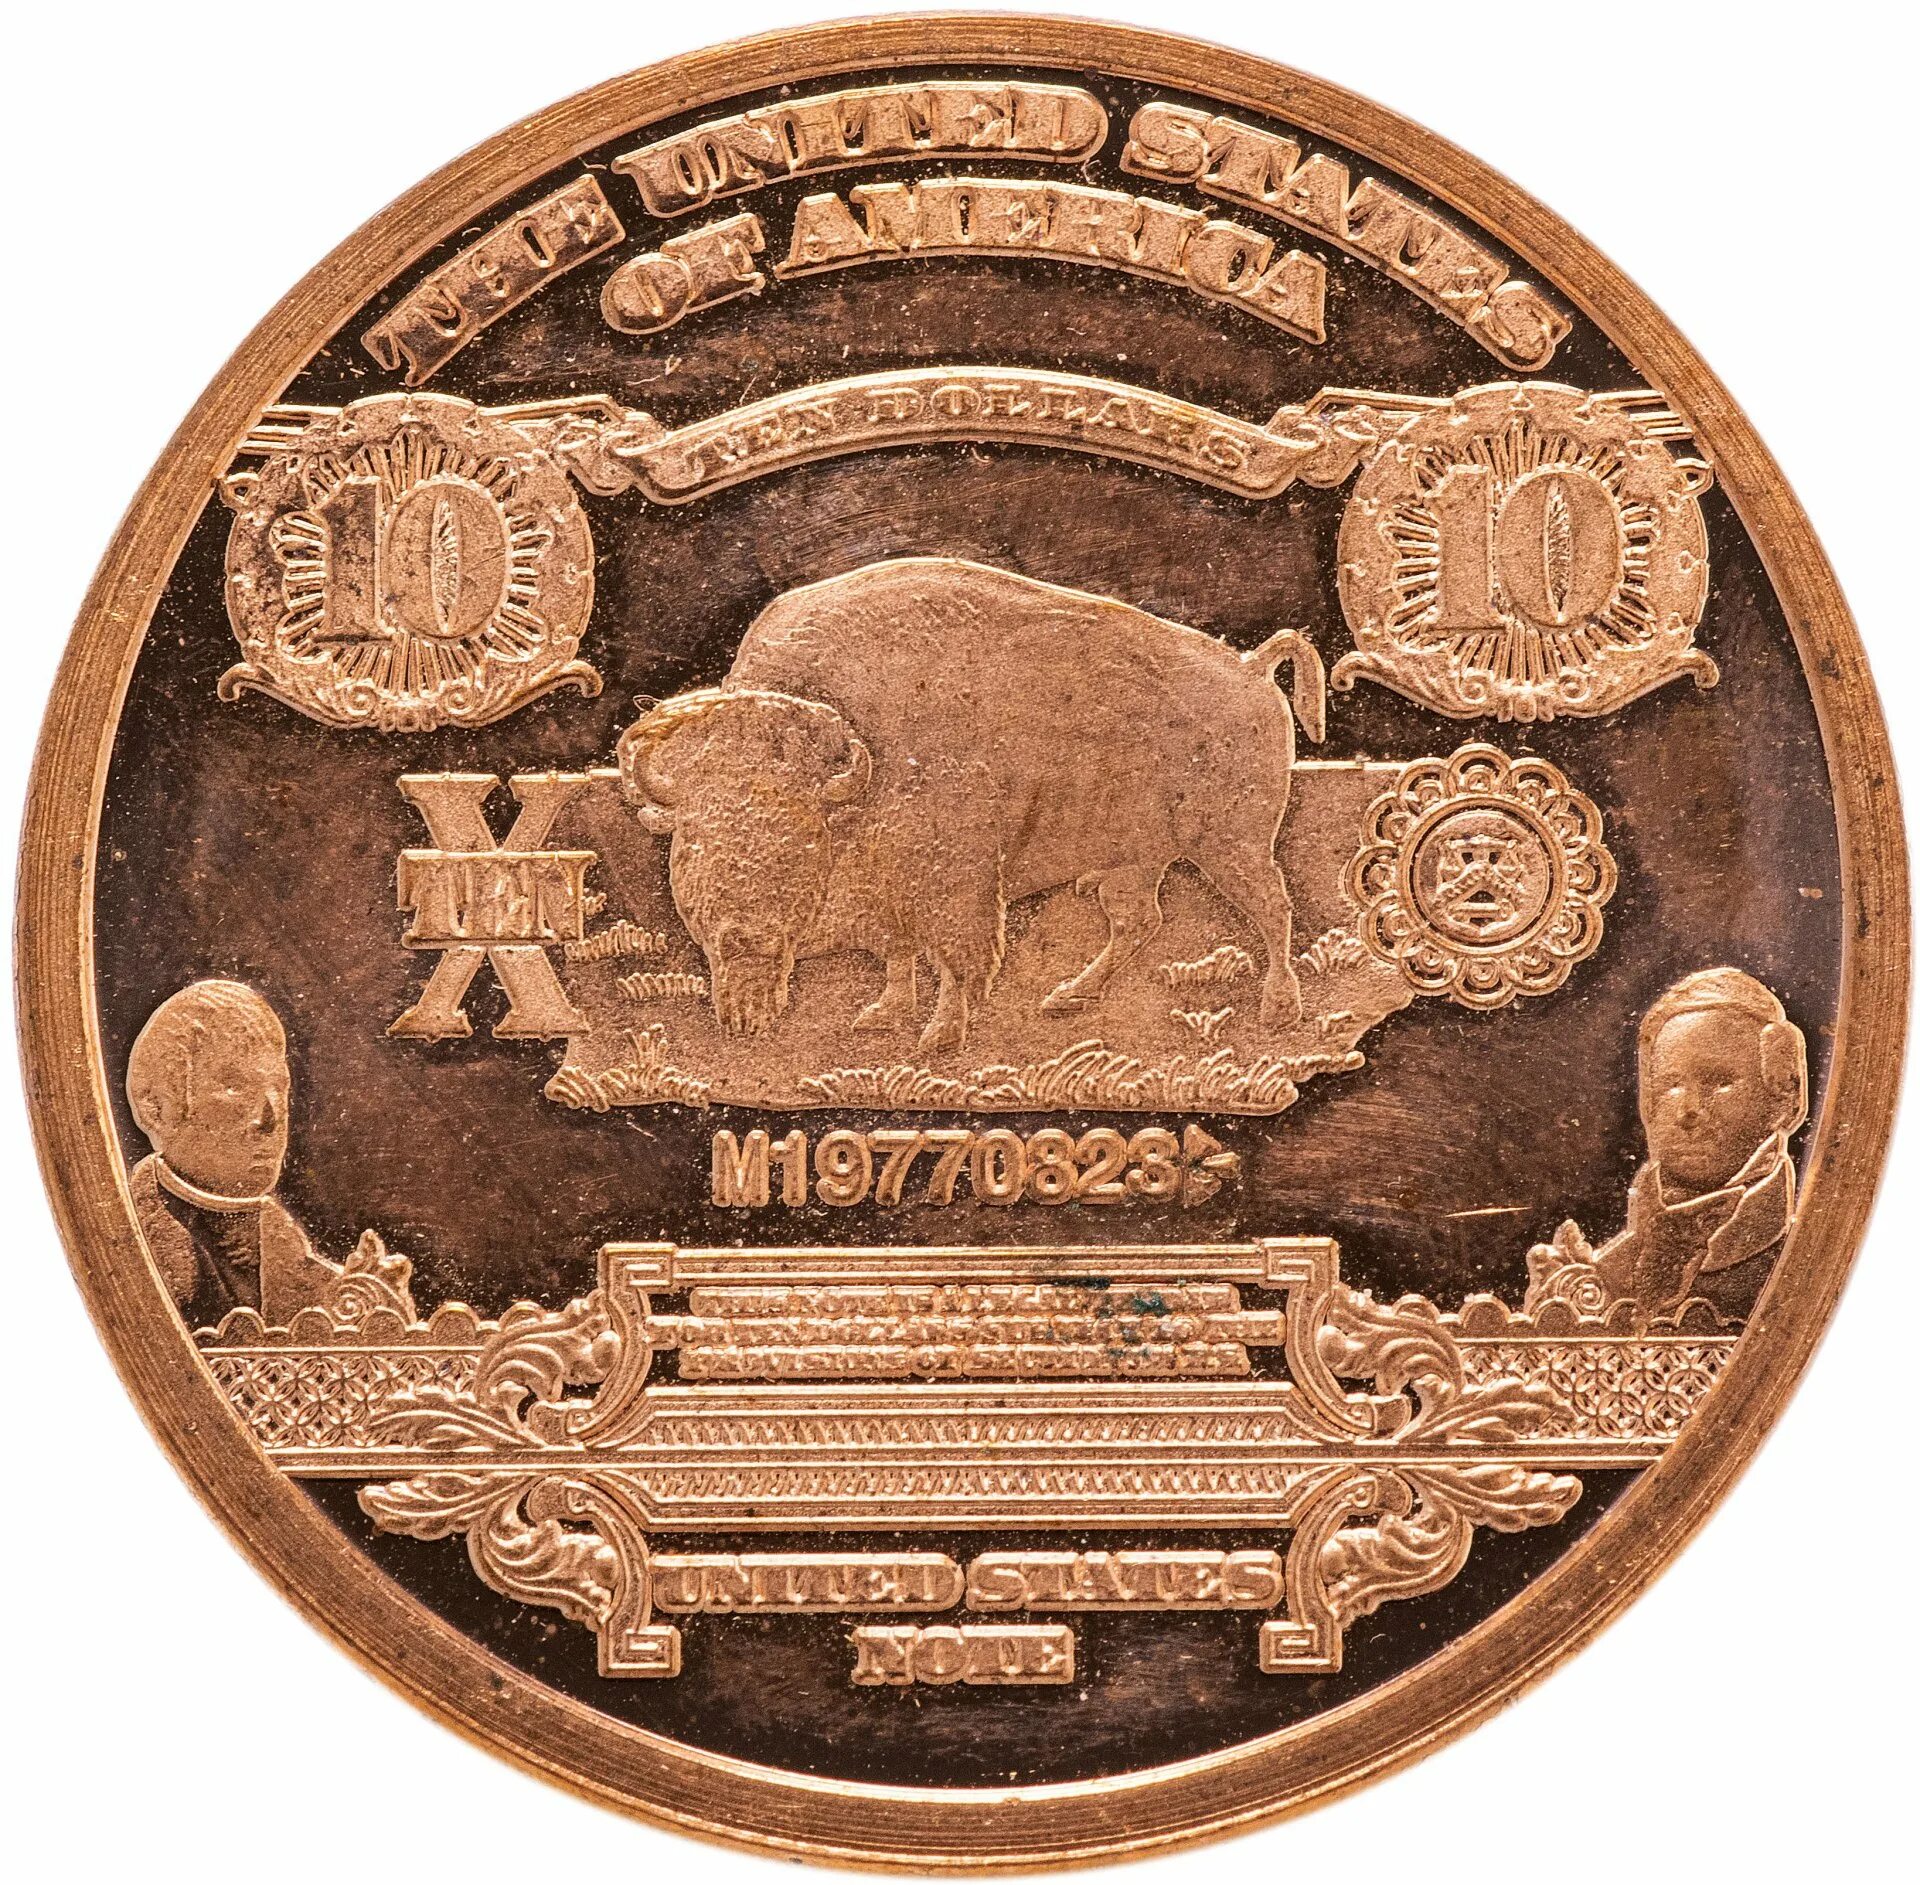 1 унция в долларах. 1 Унция меди США. Бизон на аверсе 10 долларов, 1901 г.]. Медная 10 долларовая монета. Монета США С бизоном.